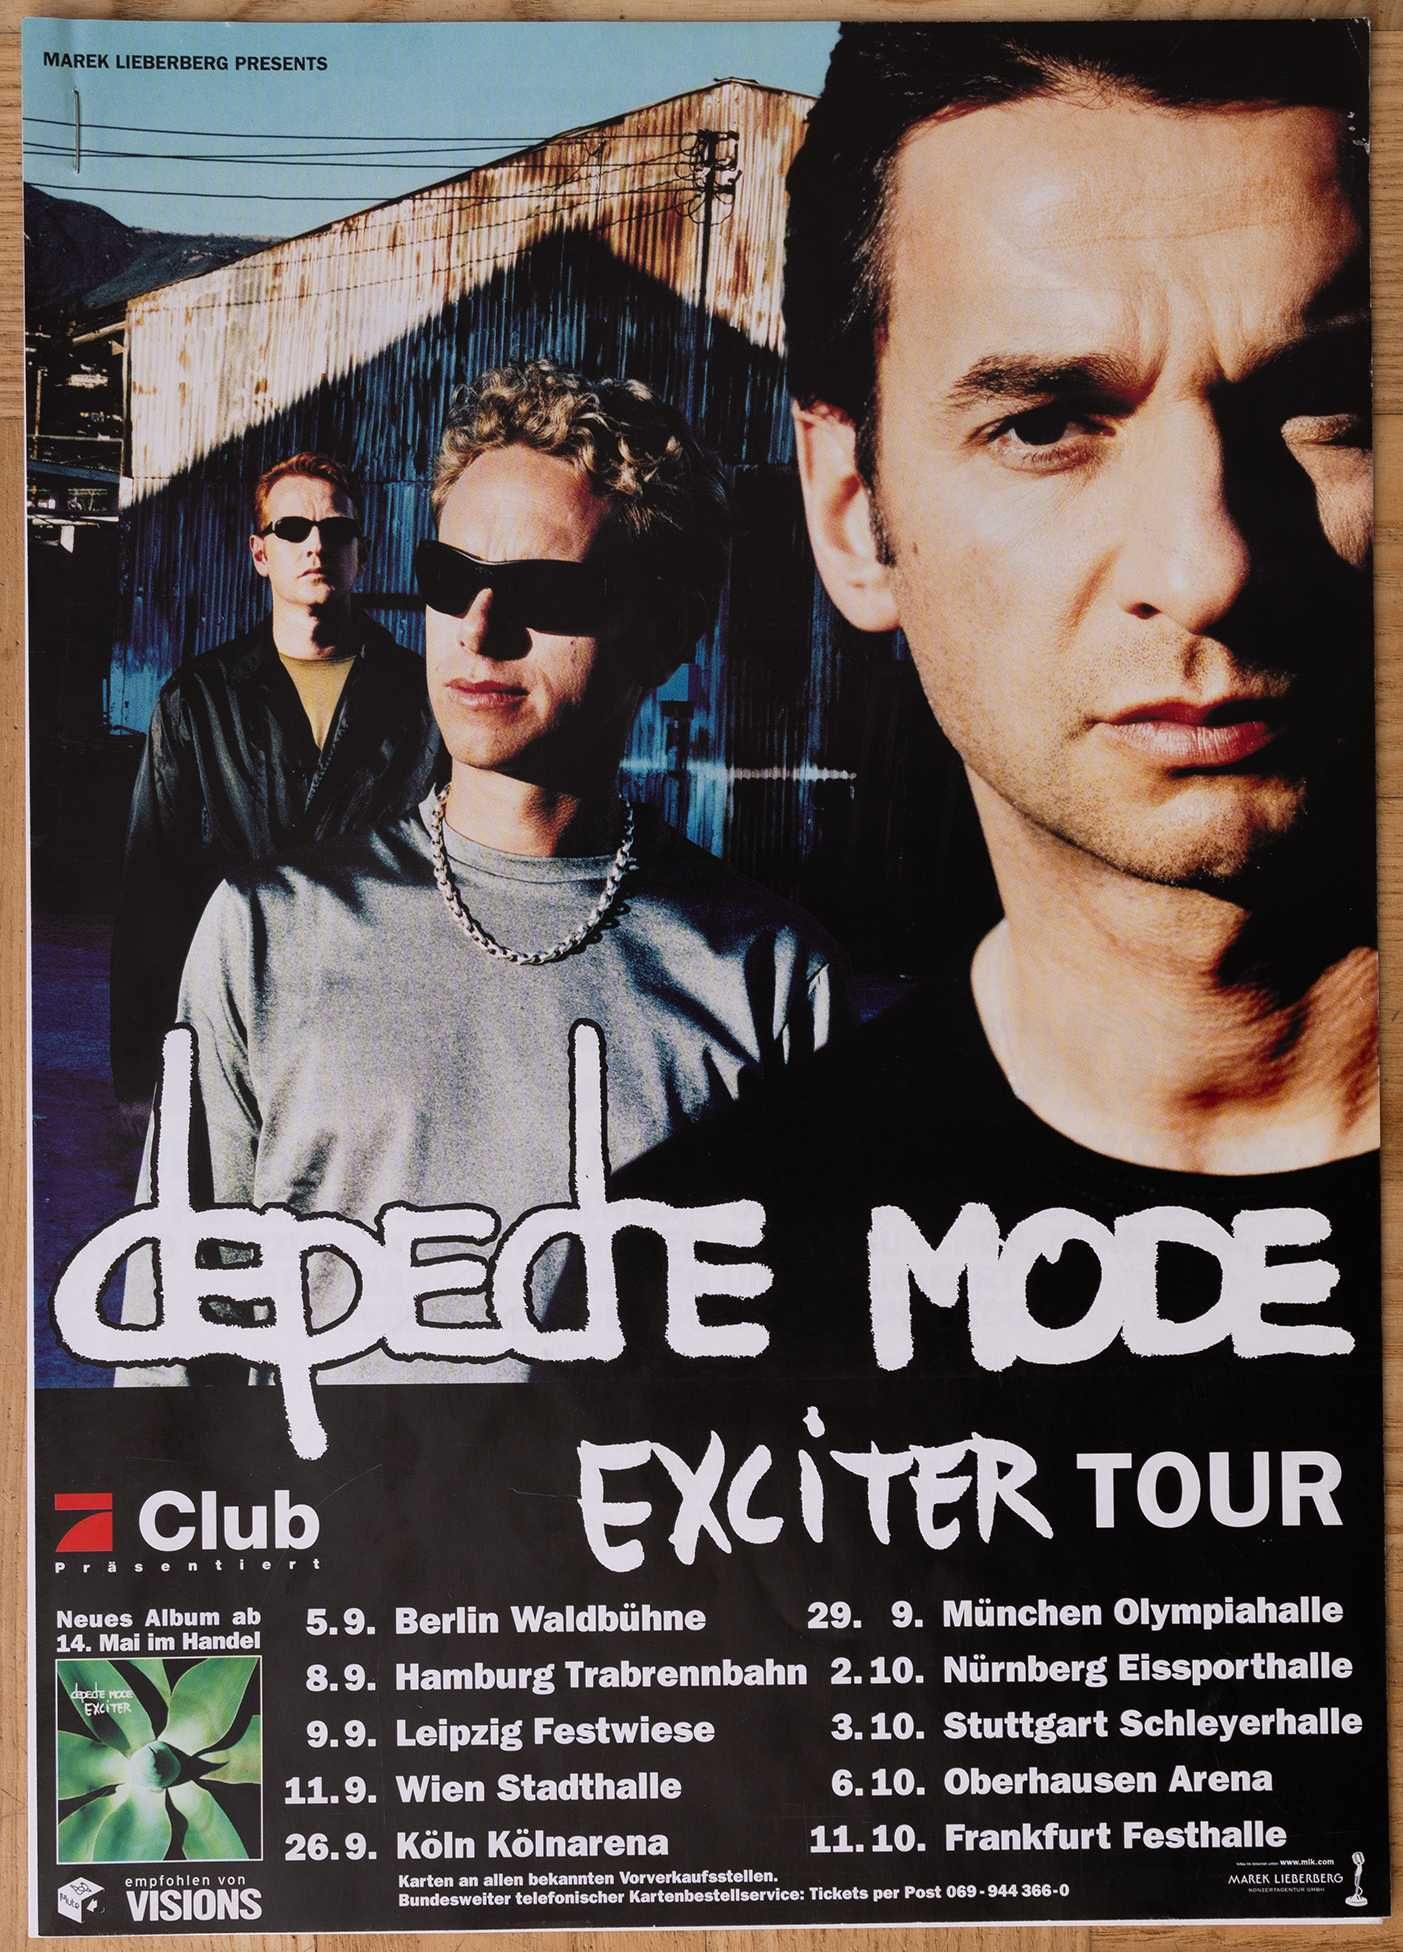 Depeche Mode - Exciter Tour - materiały prasowe